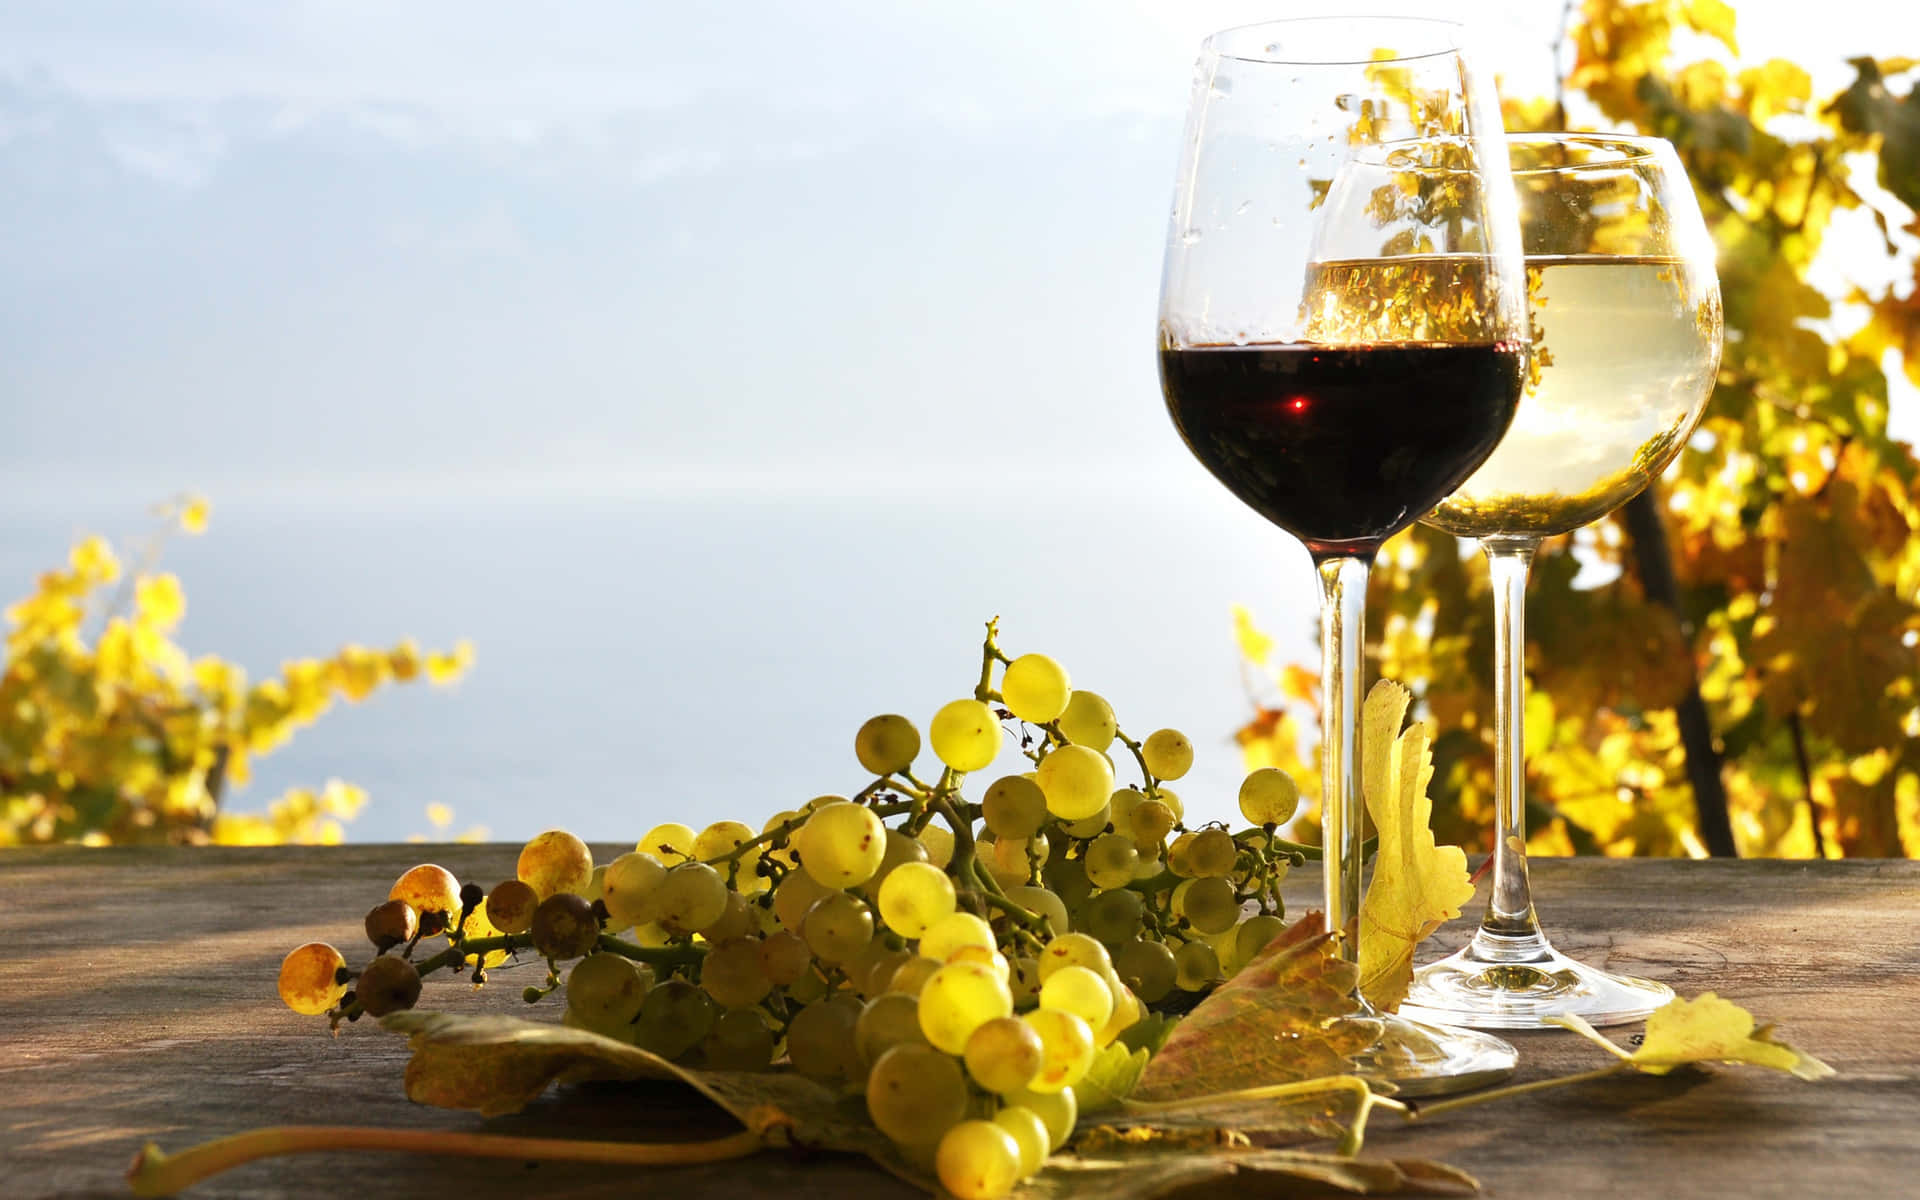 Enjoy a glass of quality wine.